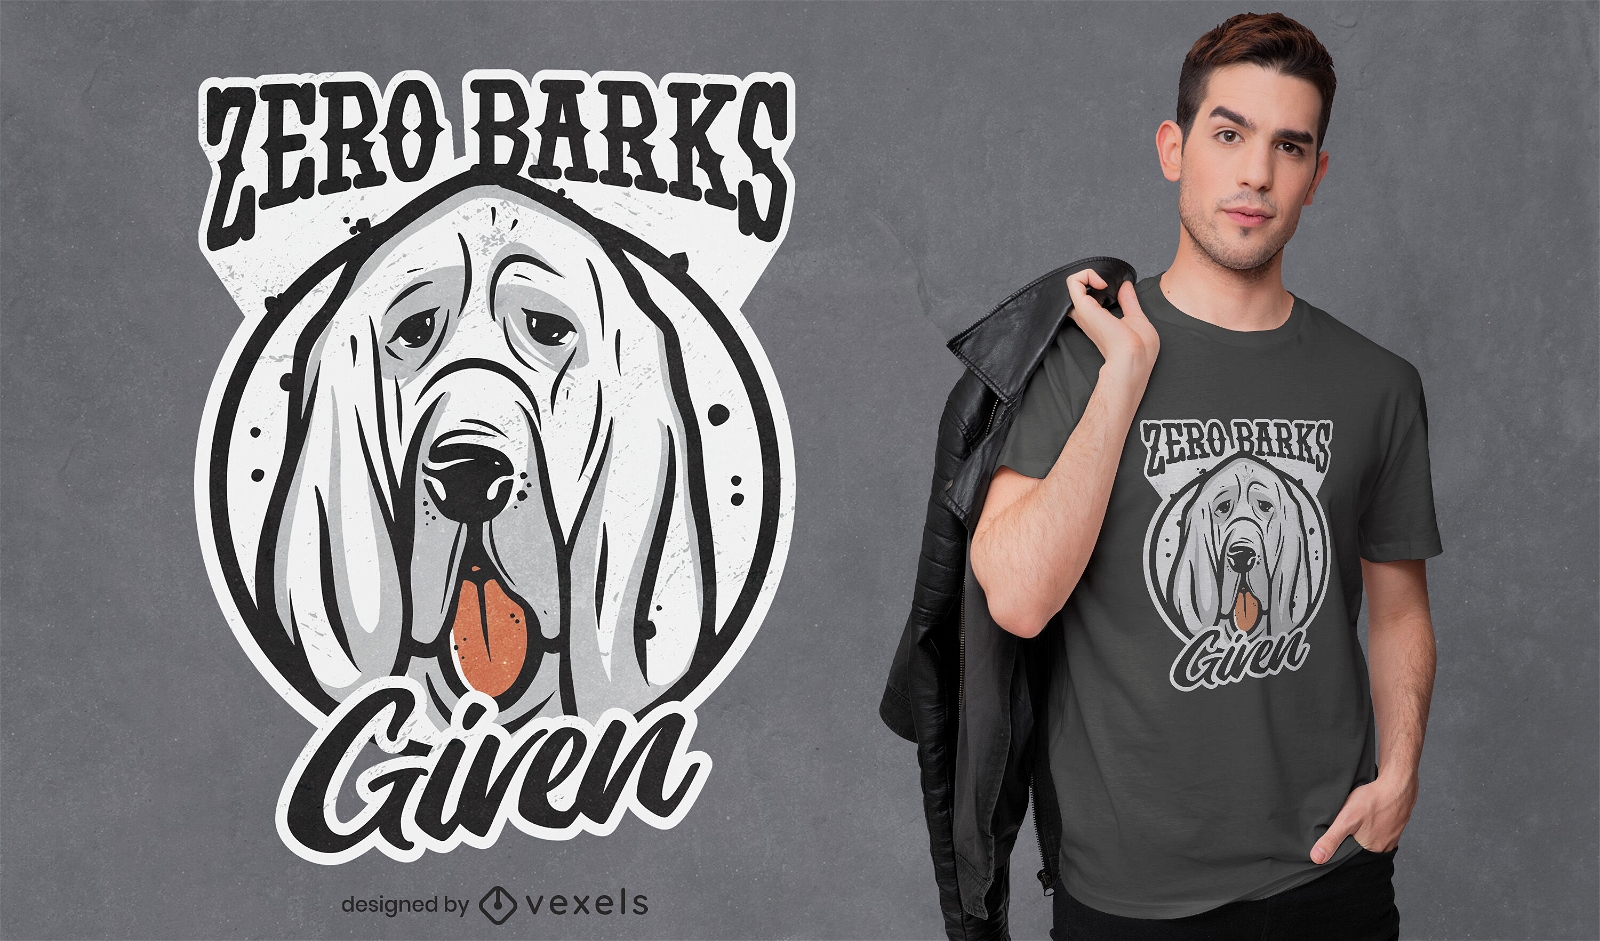 Barks given funny dog t-shirt design